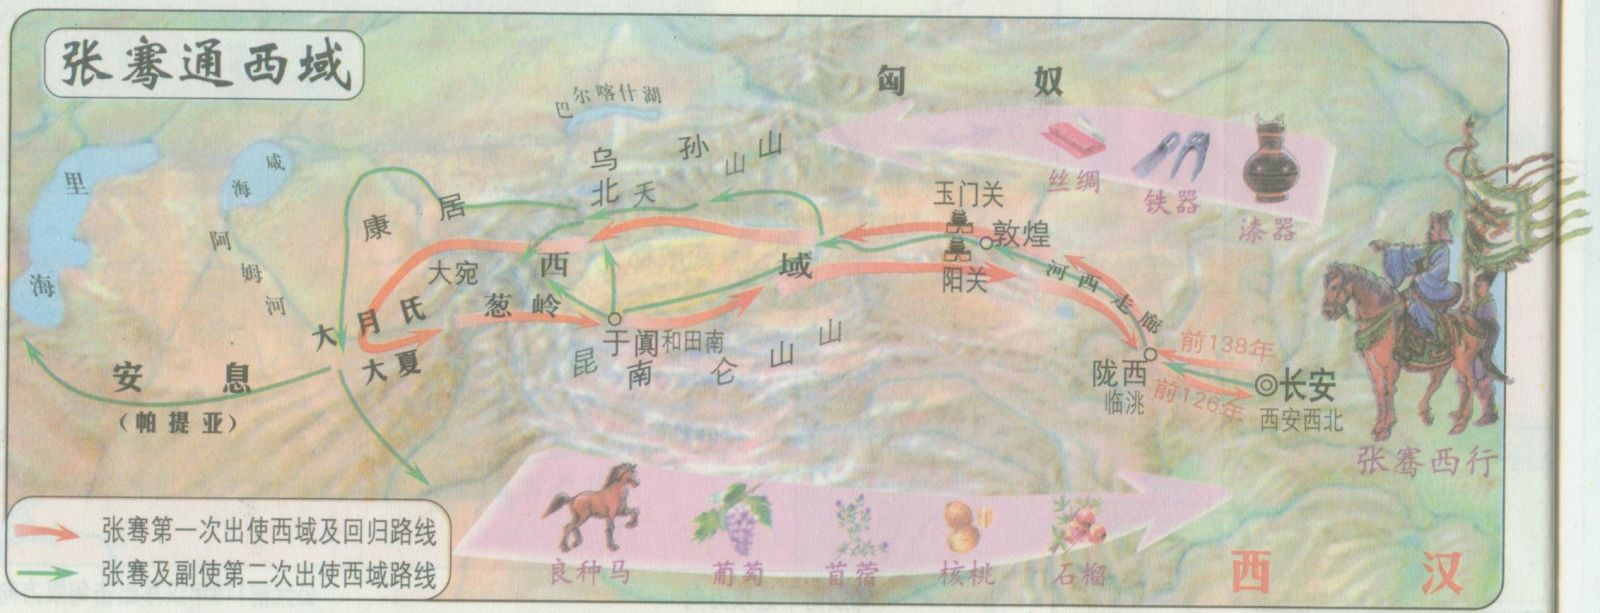 ประวัติศาสตร์จีน, ฮั่น, เส้นทางสายไหม, ฮั่นหวู่ตี้, ตงฟางซั่ว, โปเยโปโลเย